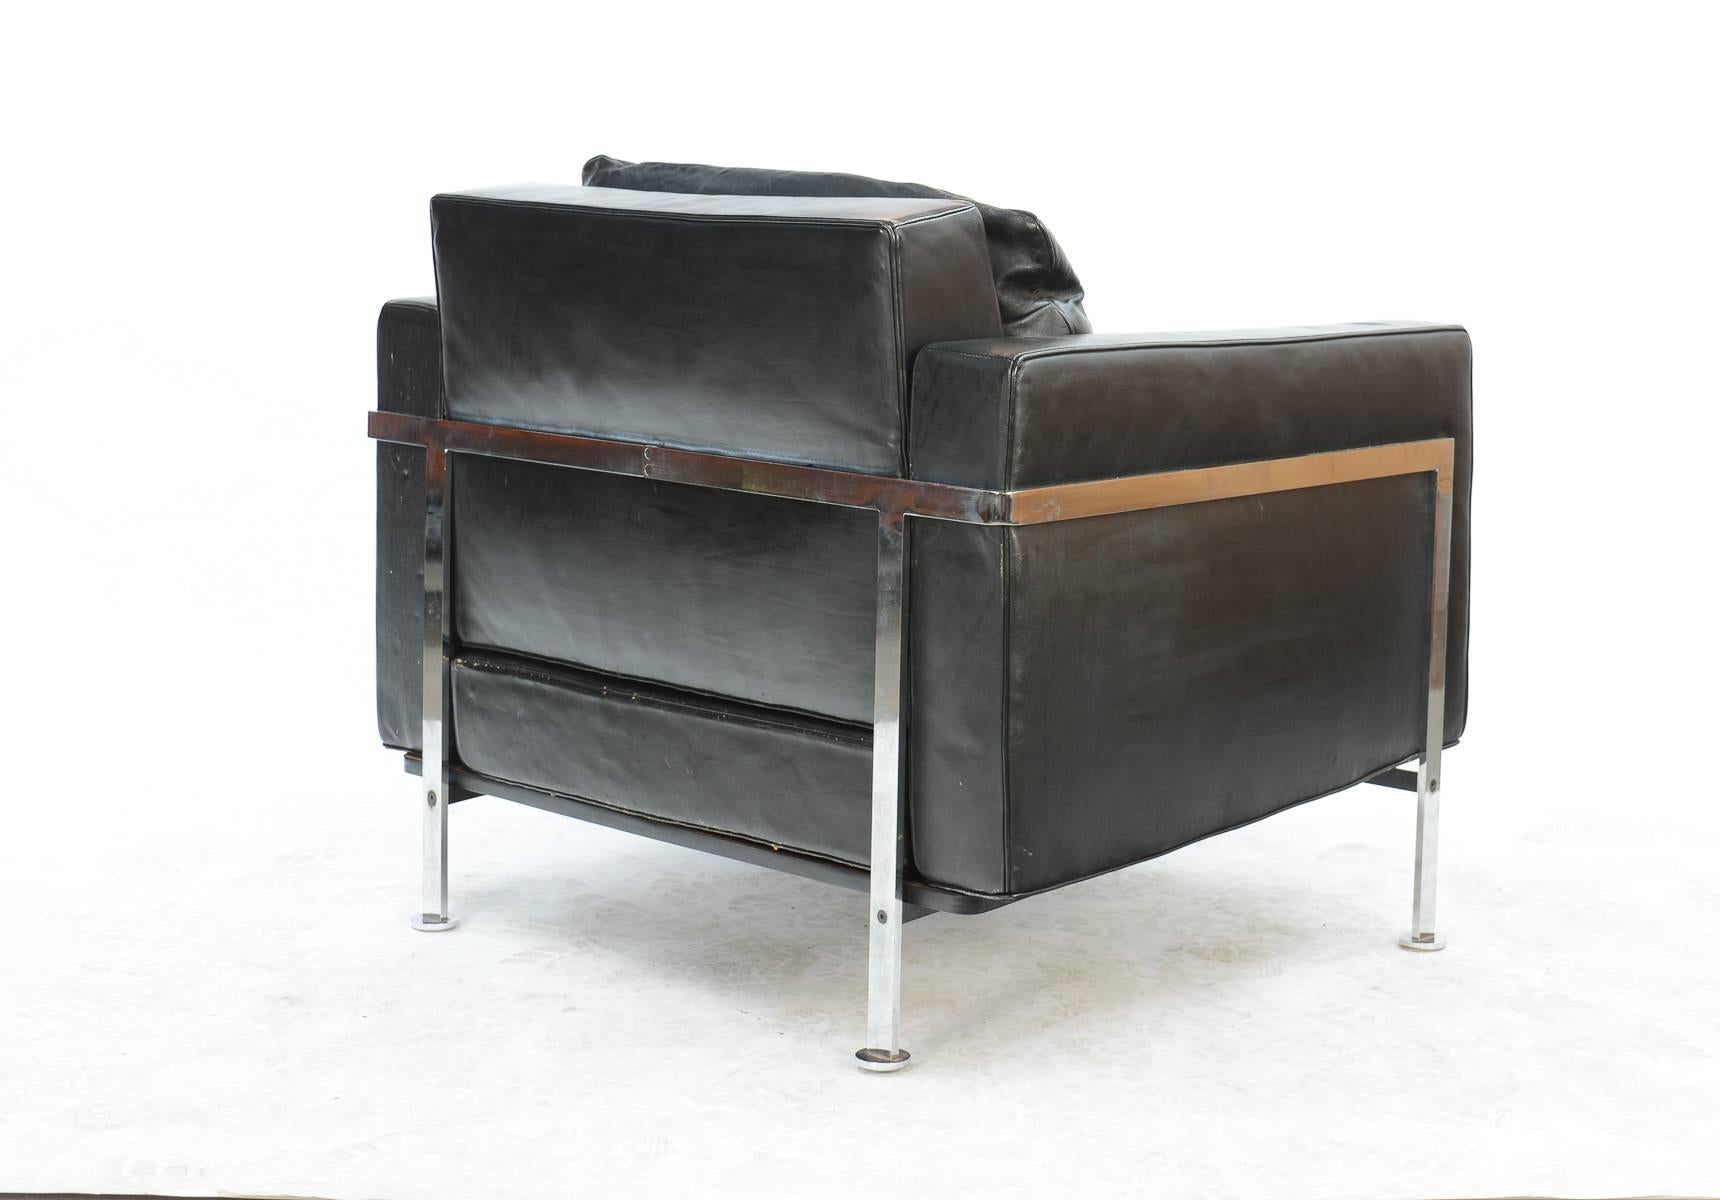 Post-Modern Swiss Architects Trix and Robert Haussmann's RH-302 Club Chair for De Sede